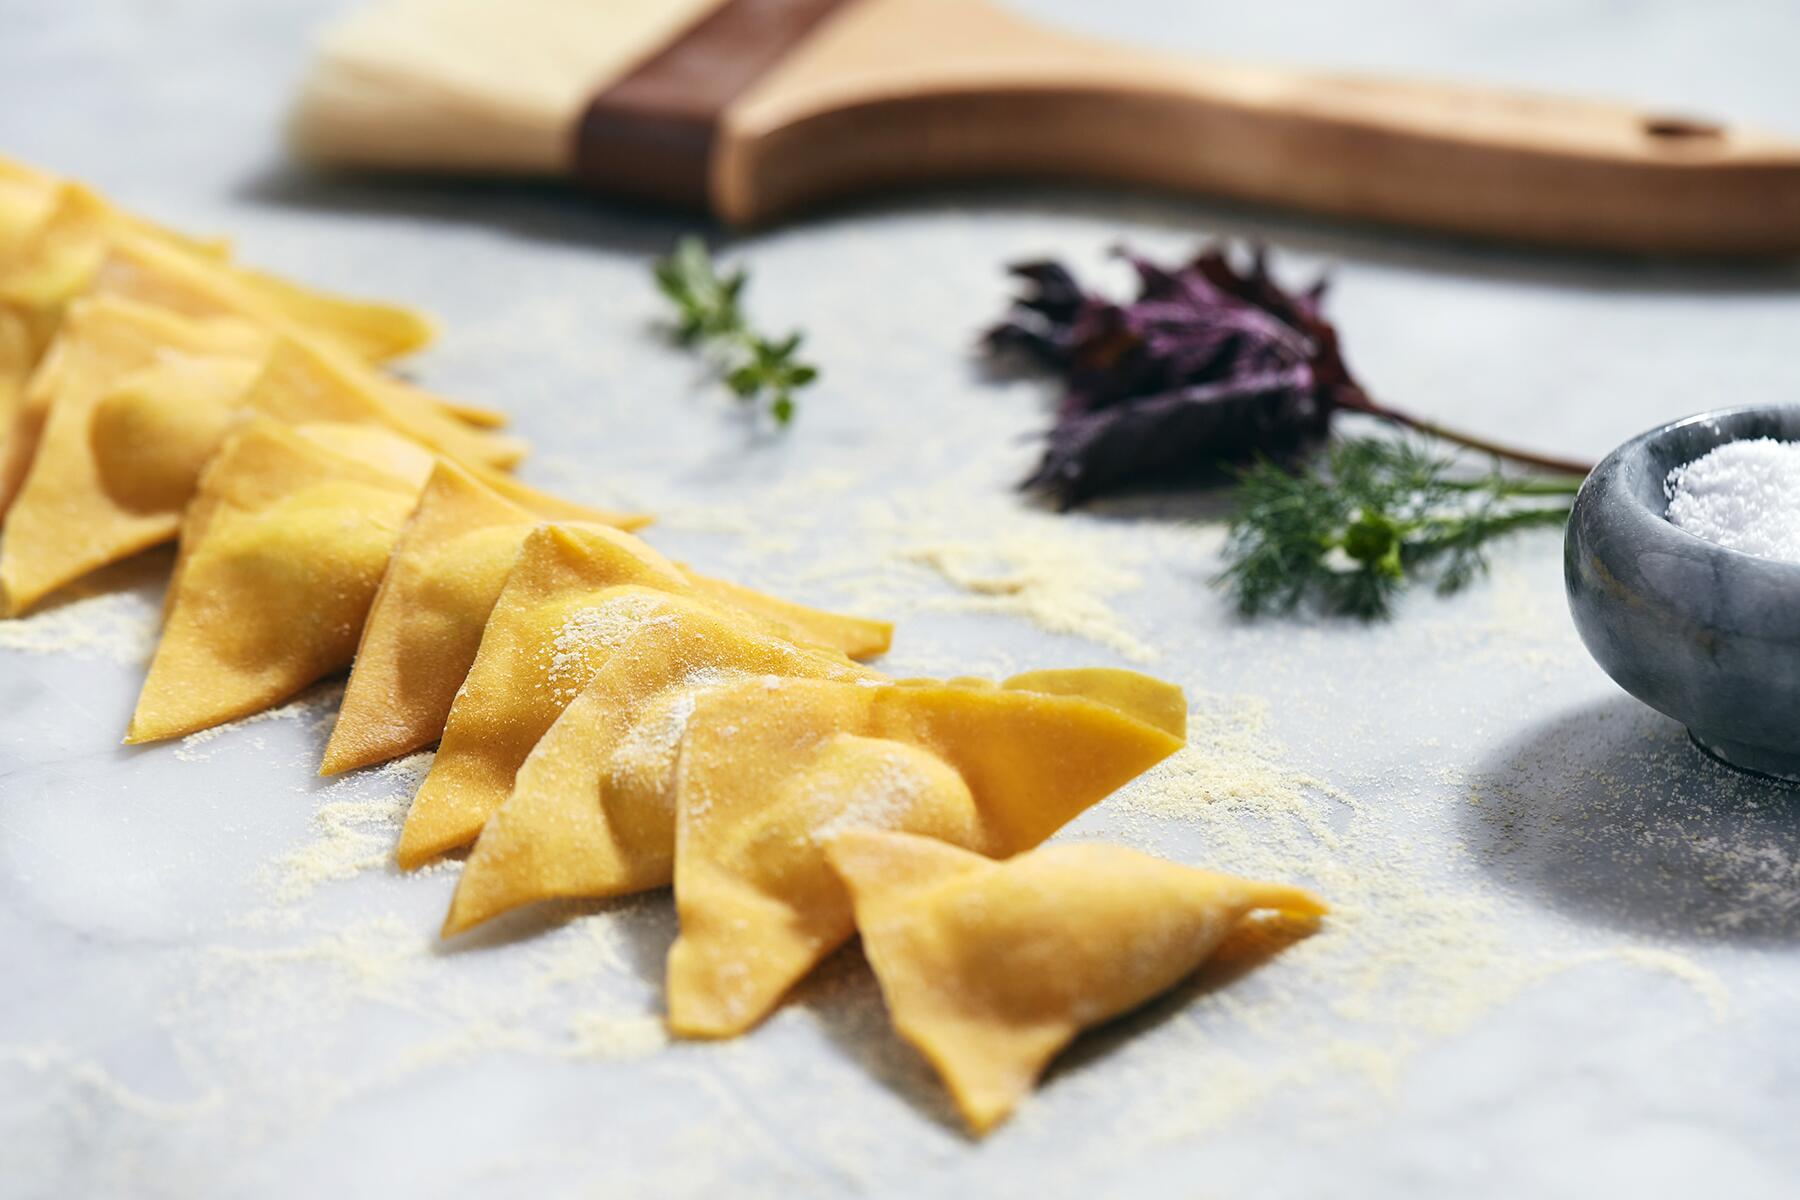 15 of the Best Italian Restaurants in the U.S.